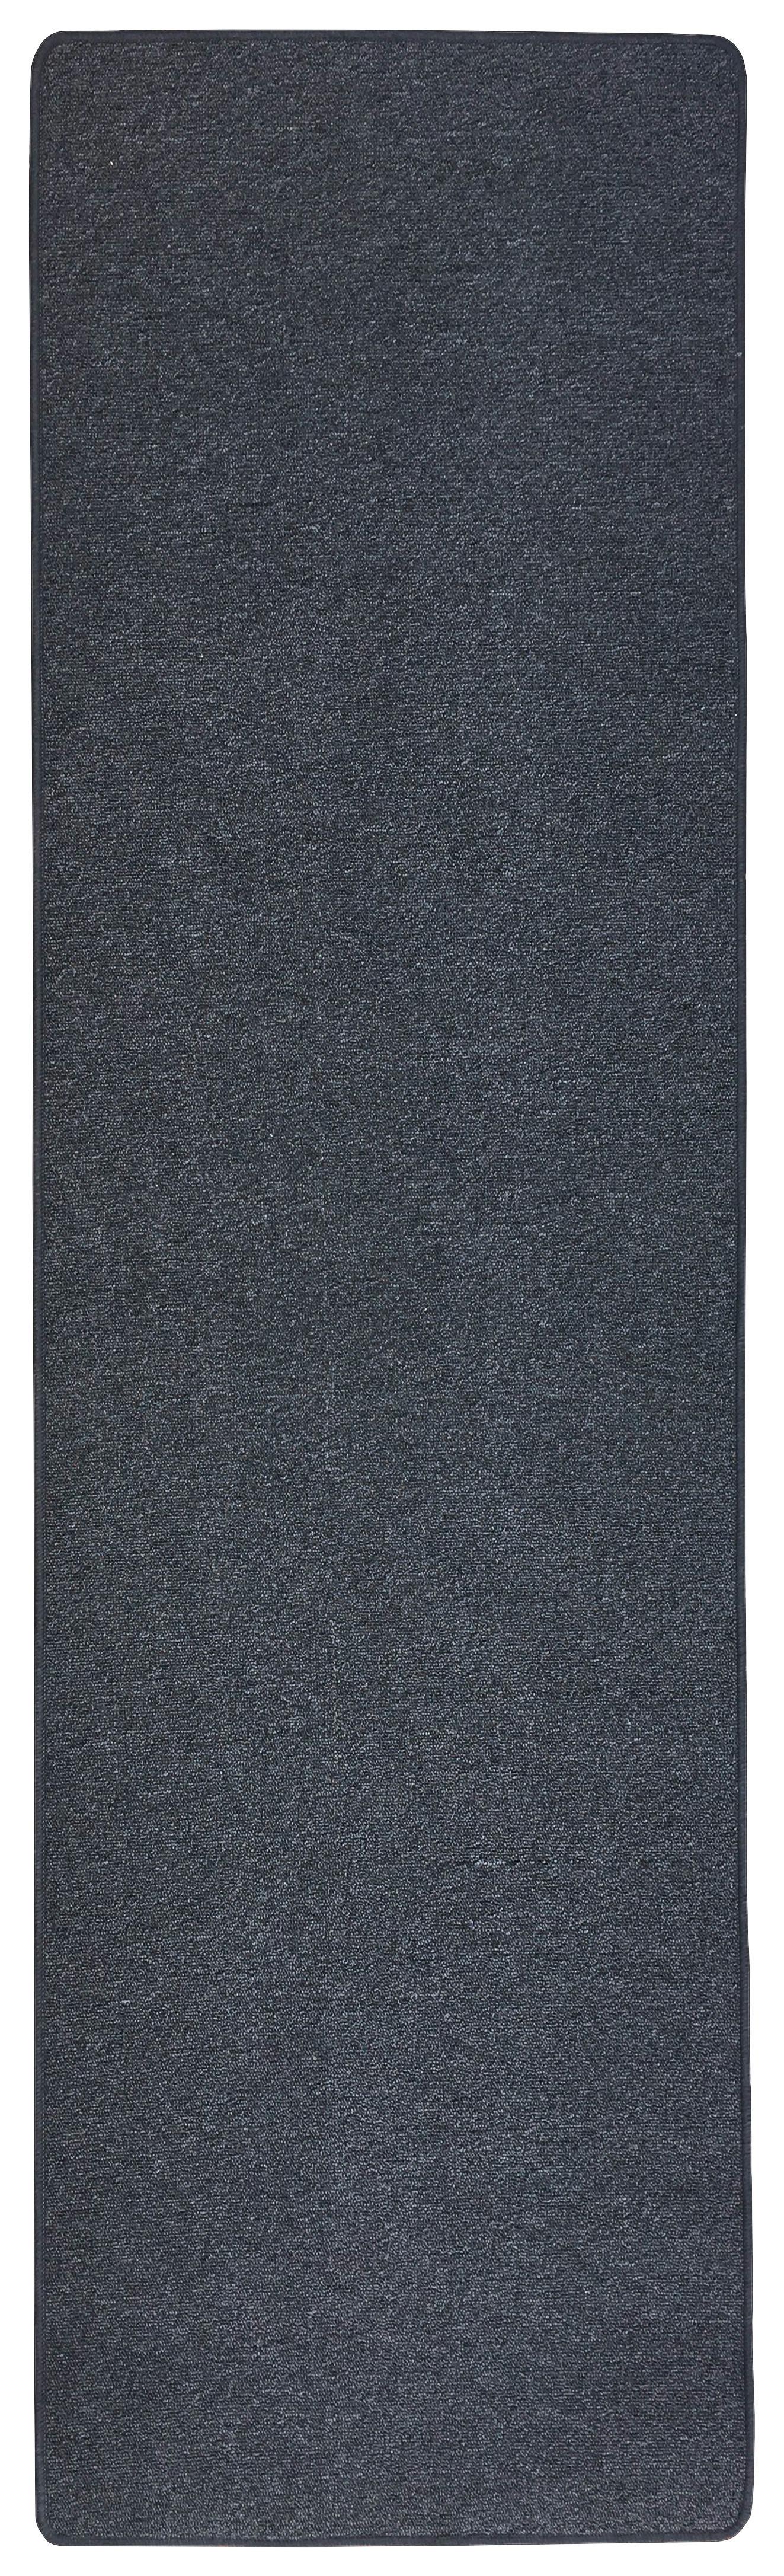 Běhoun Alberta 2, 66/200cm - antracitová, Basics, plast (66/200cm) - Modern Living